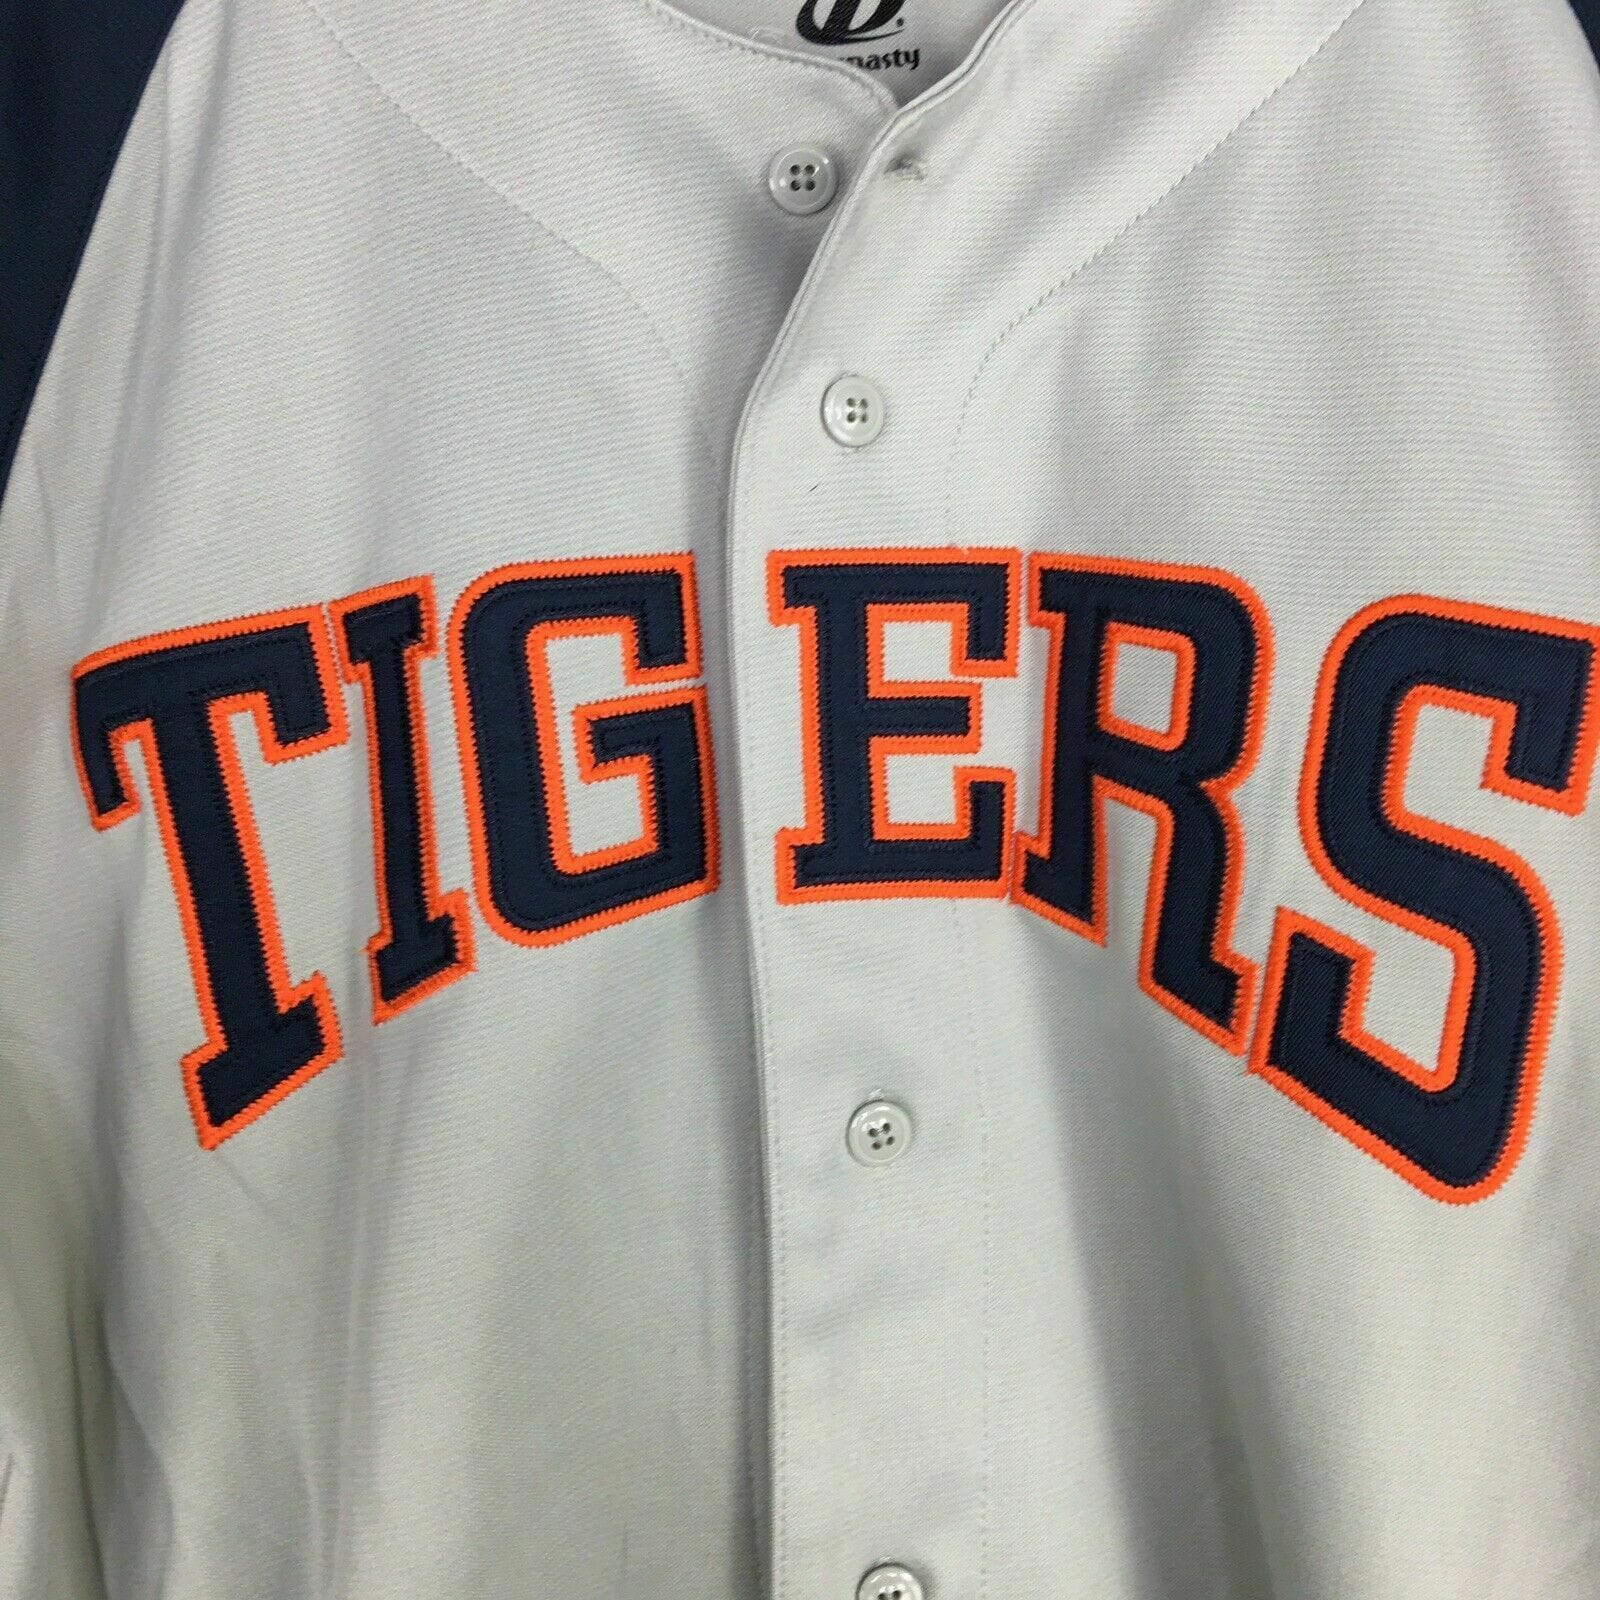 detroit tigers orange uniforms